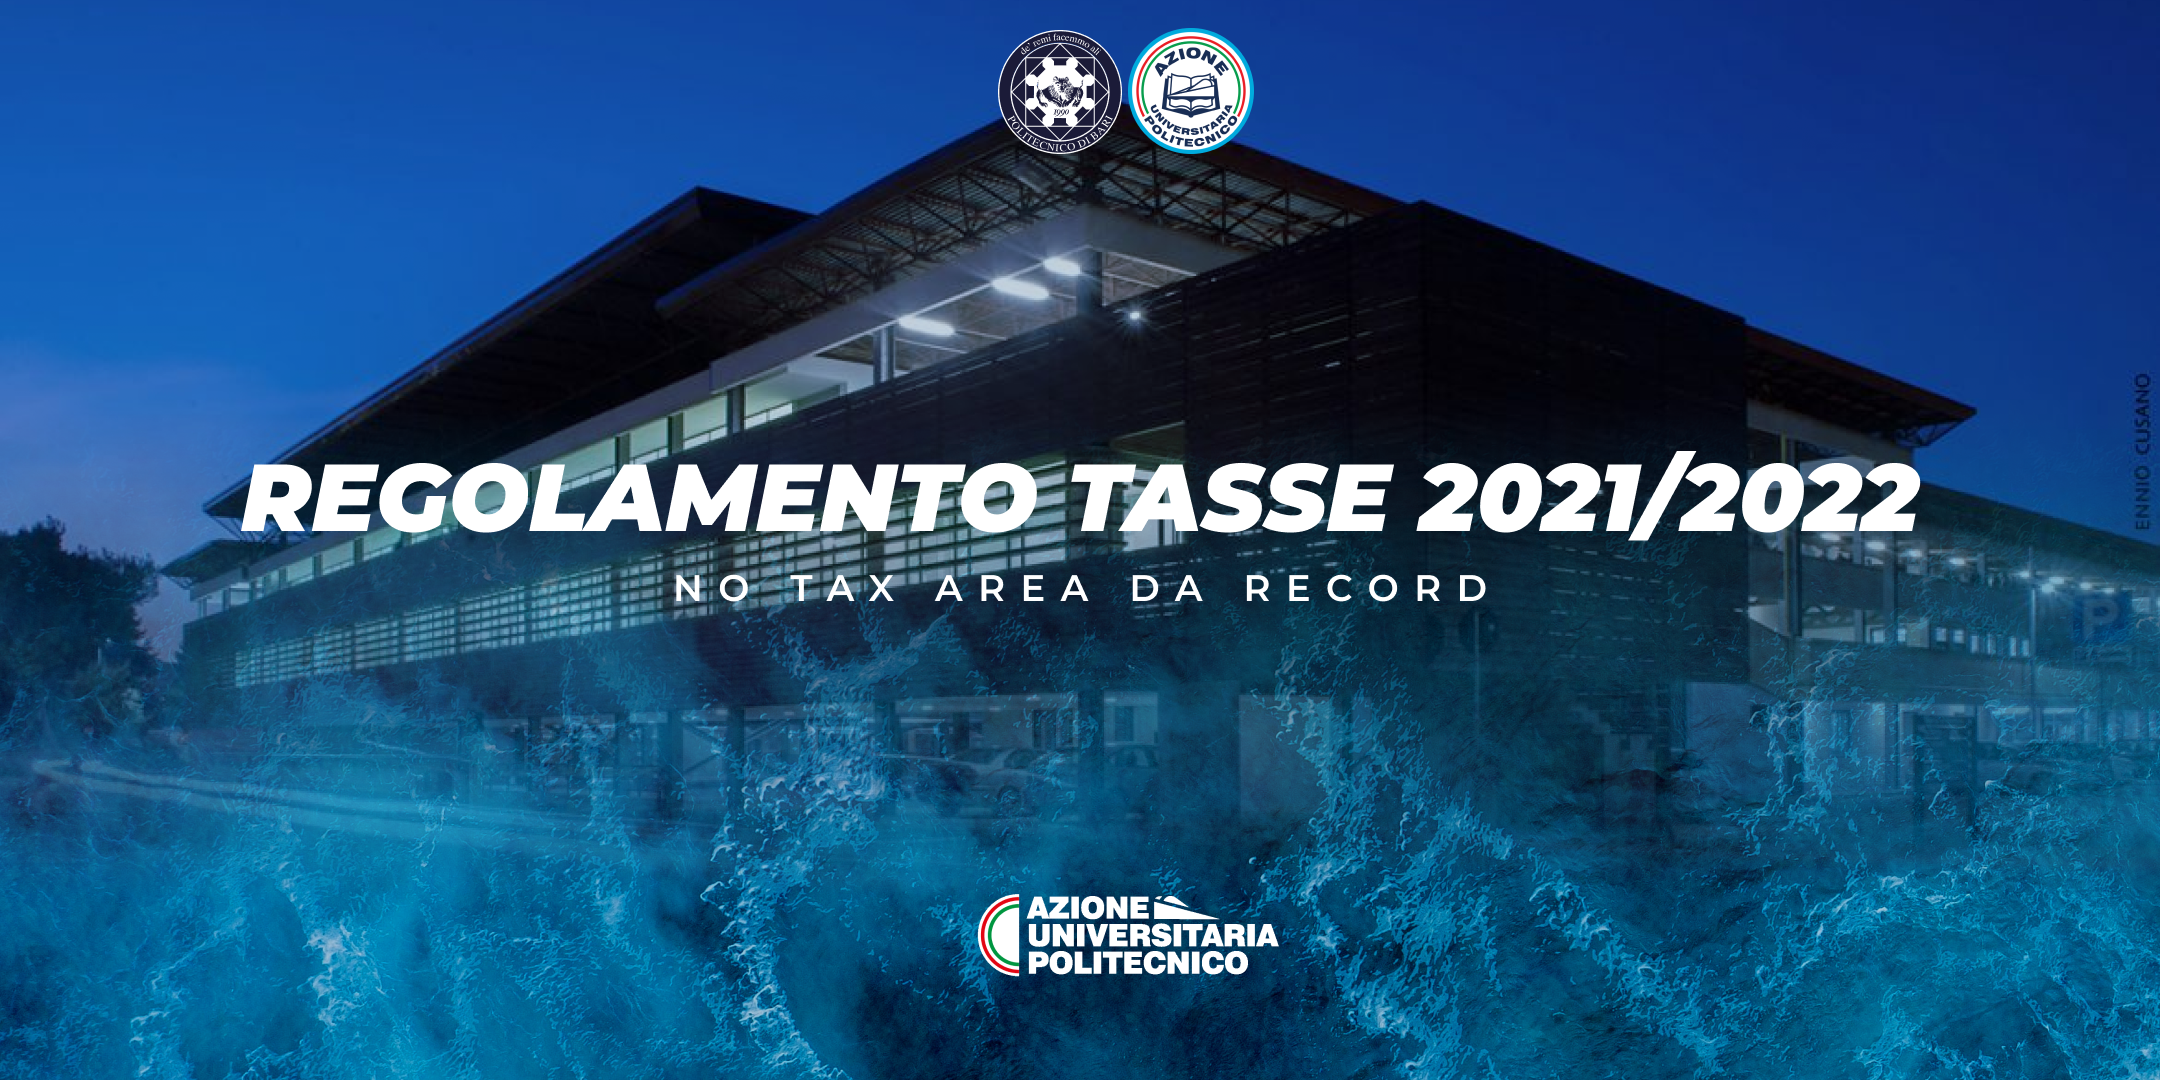 REGOLAMENTO TASSE 2021/2022: NO TAX AREA DA RECORD